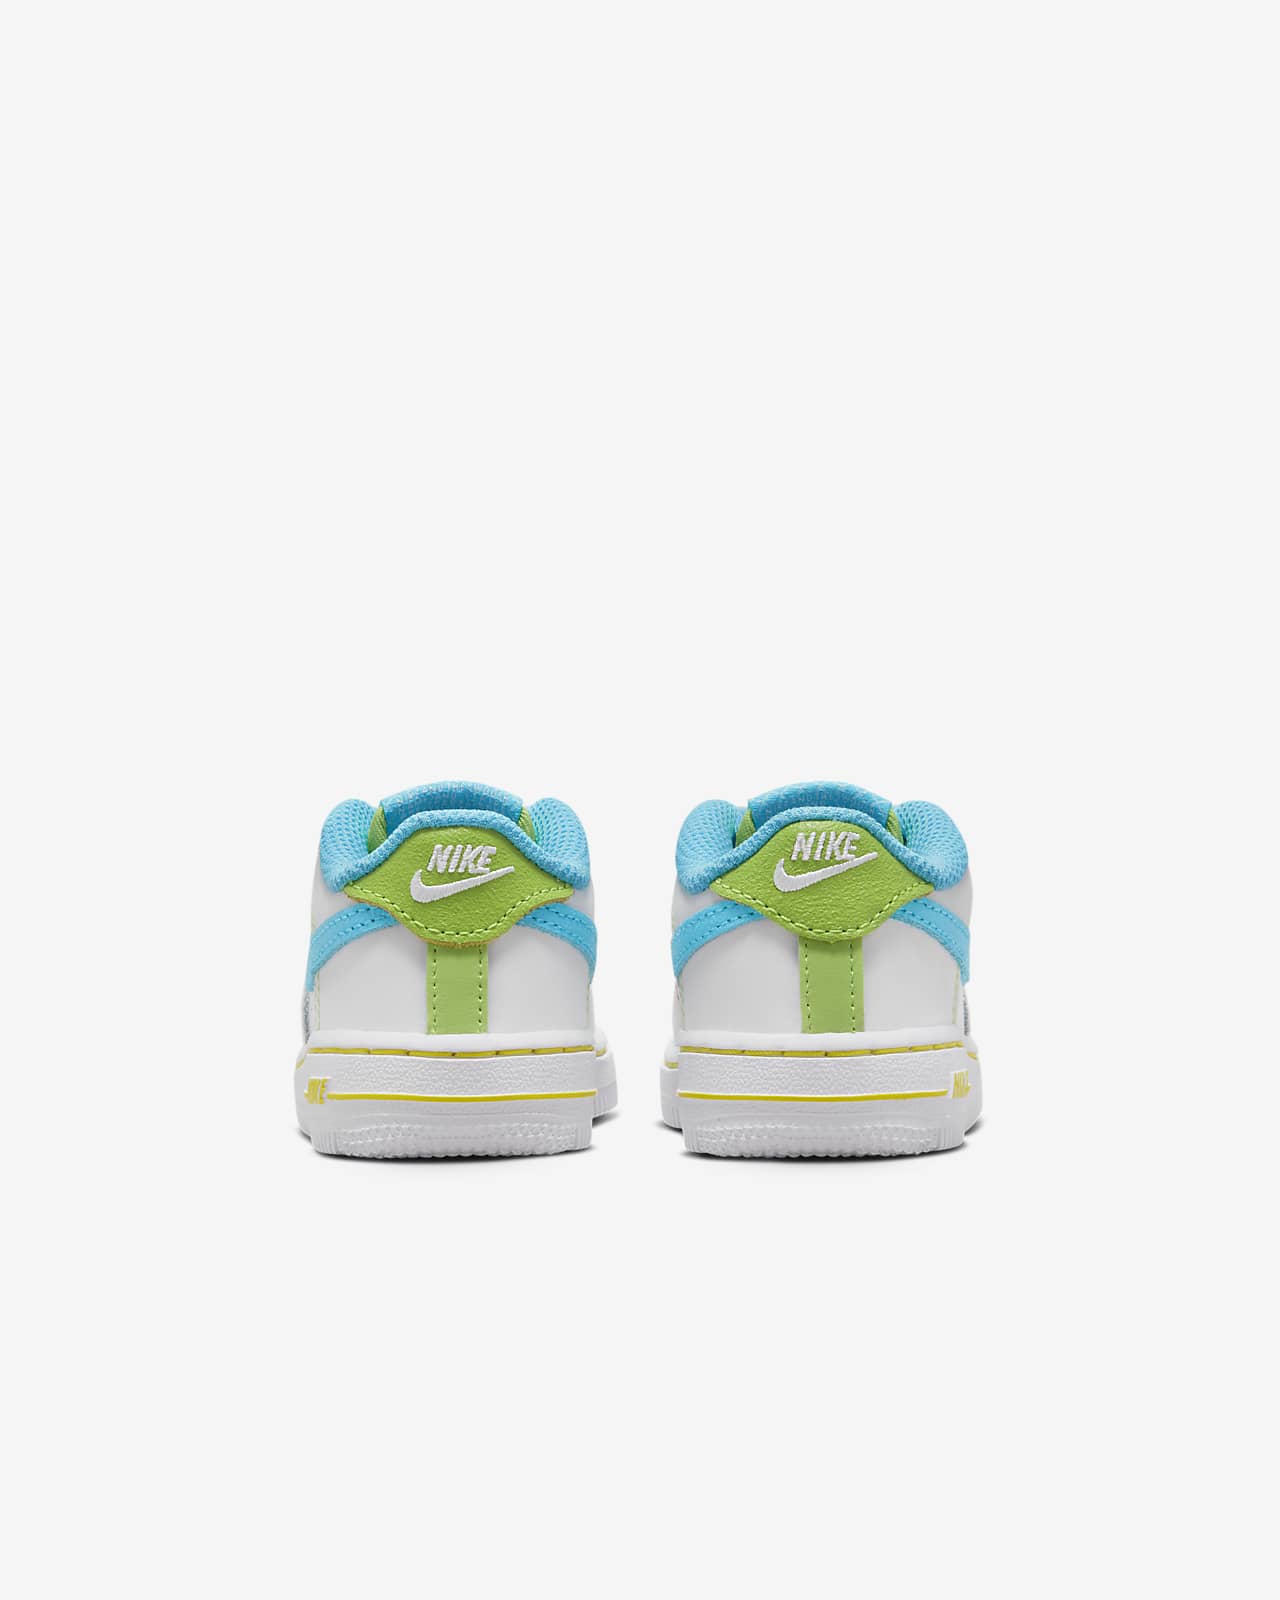 Nike Force 1 LV8 BT (Infant/Toddler) White/Green